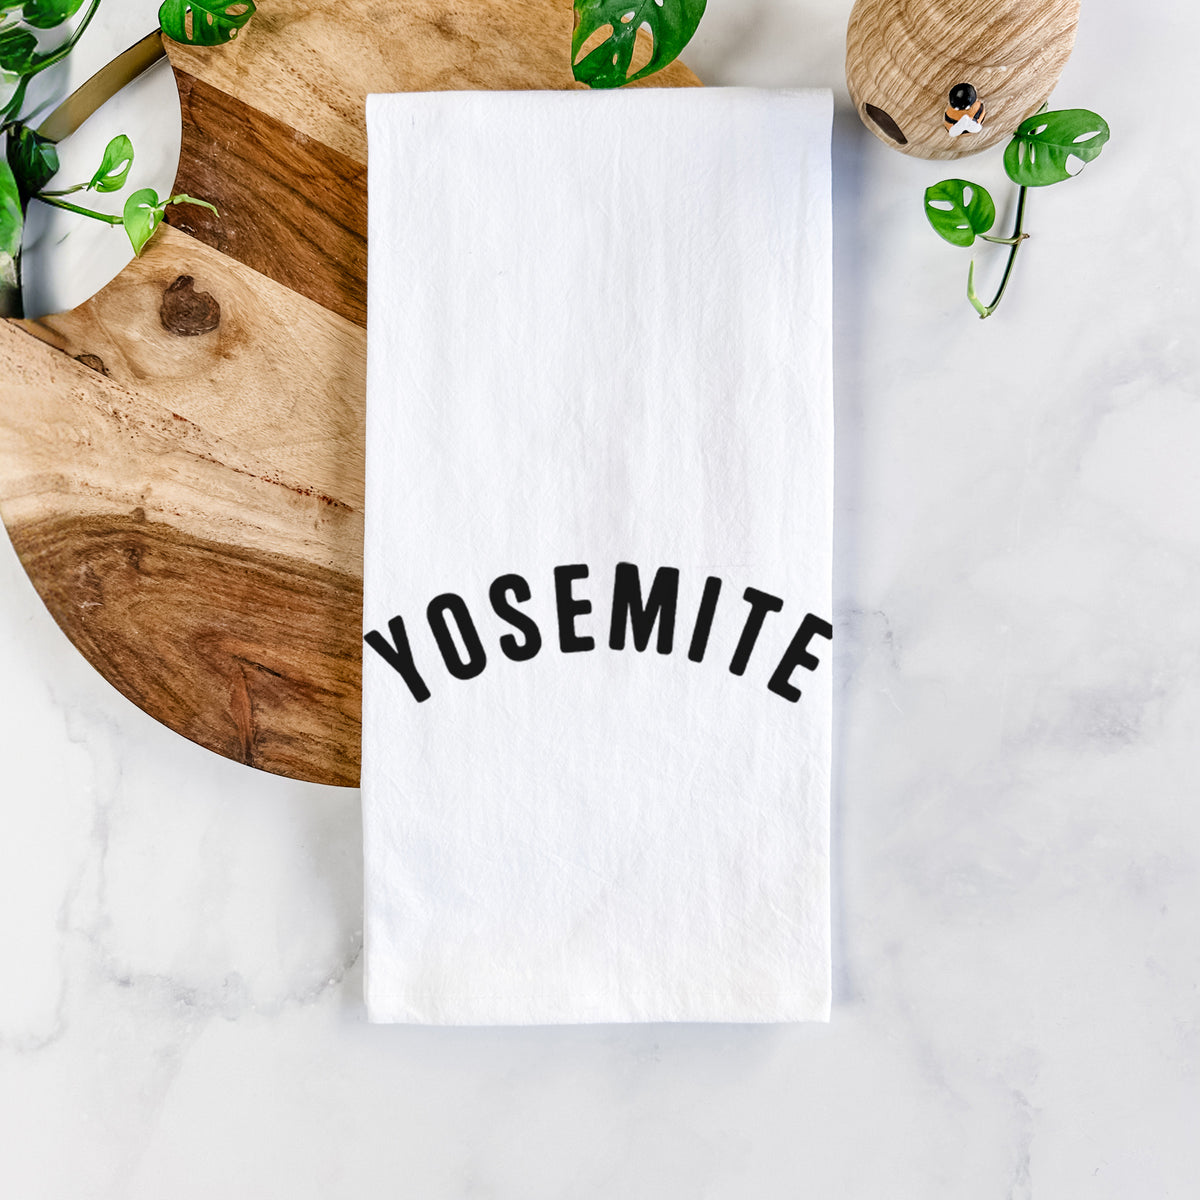 Yosemite Tea Towel